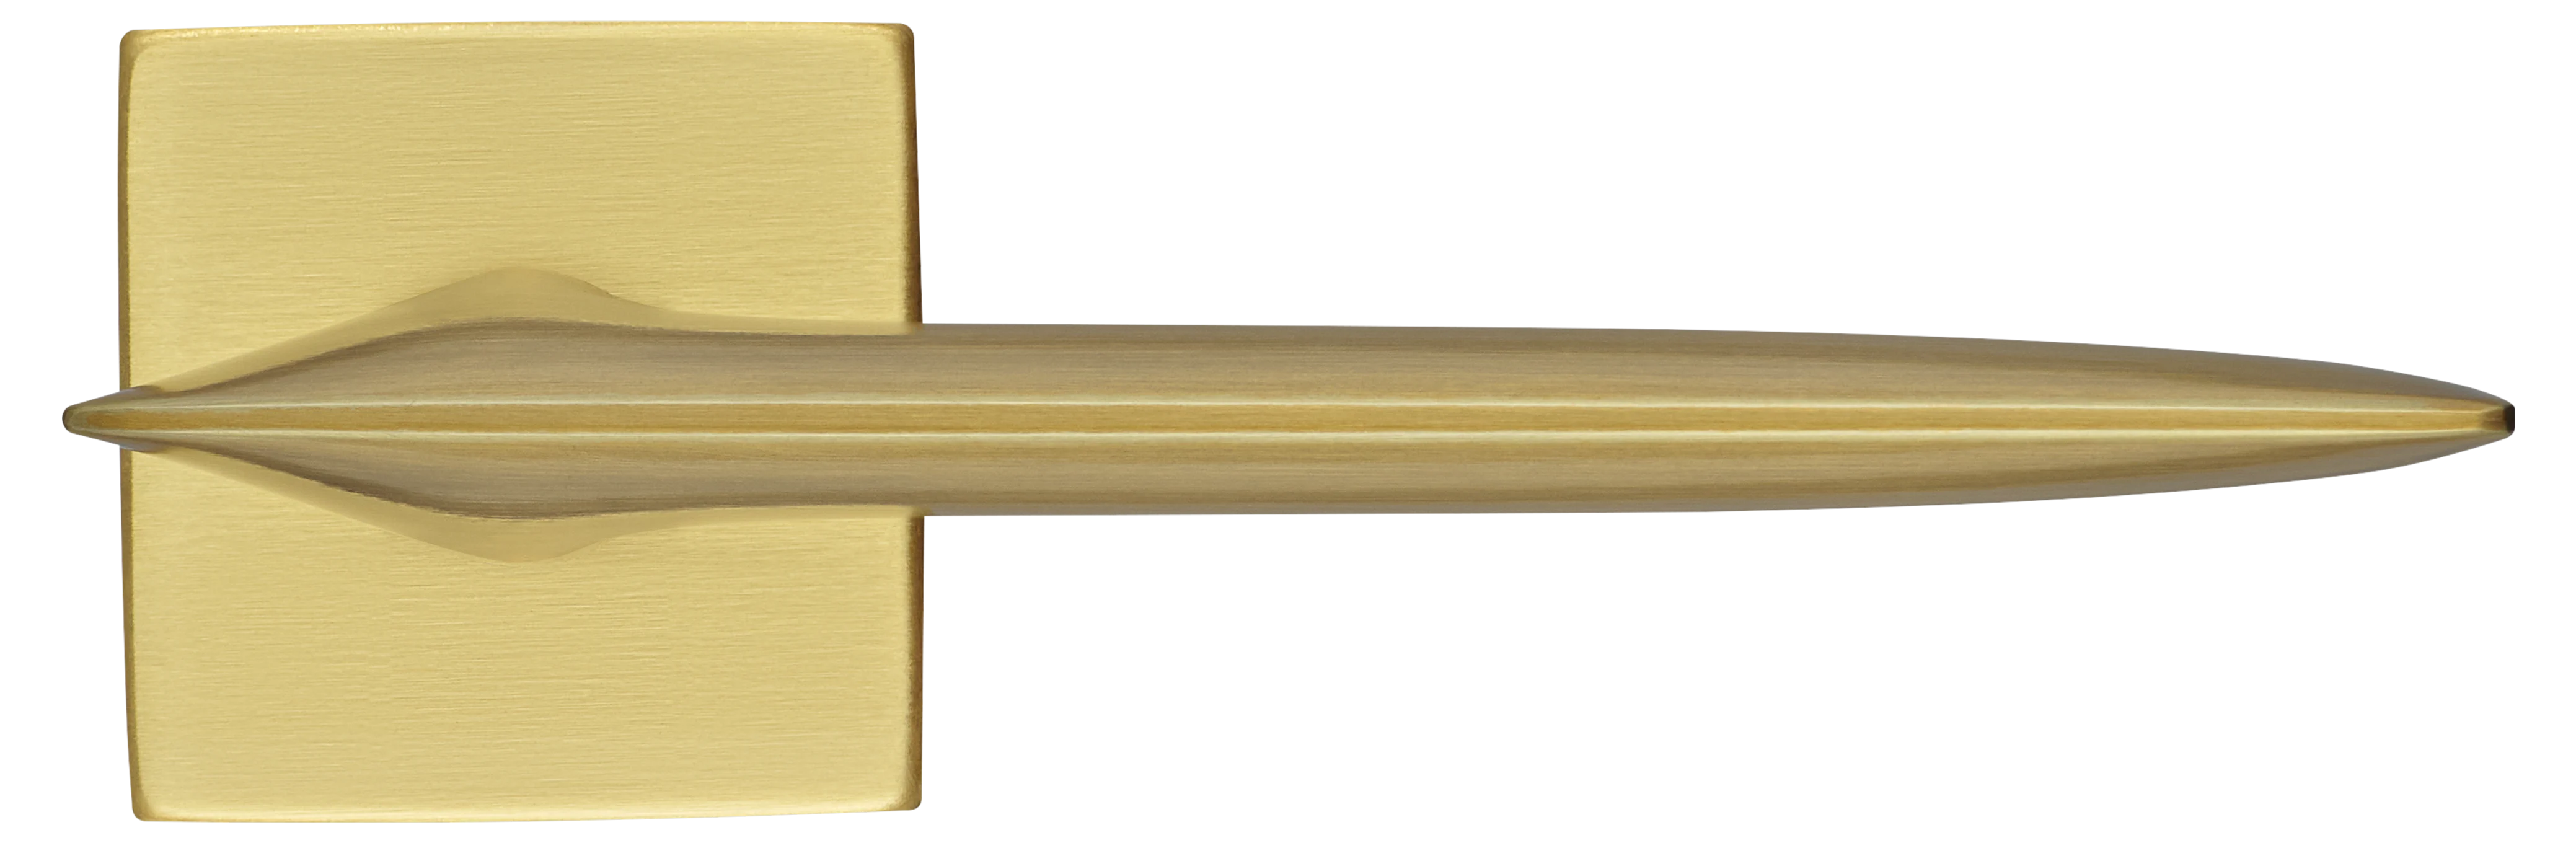 GALACTIC S5 OSA, ручка дверная, цвет -  матовое золото фото купить в Волгограде